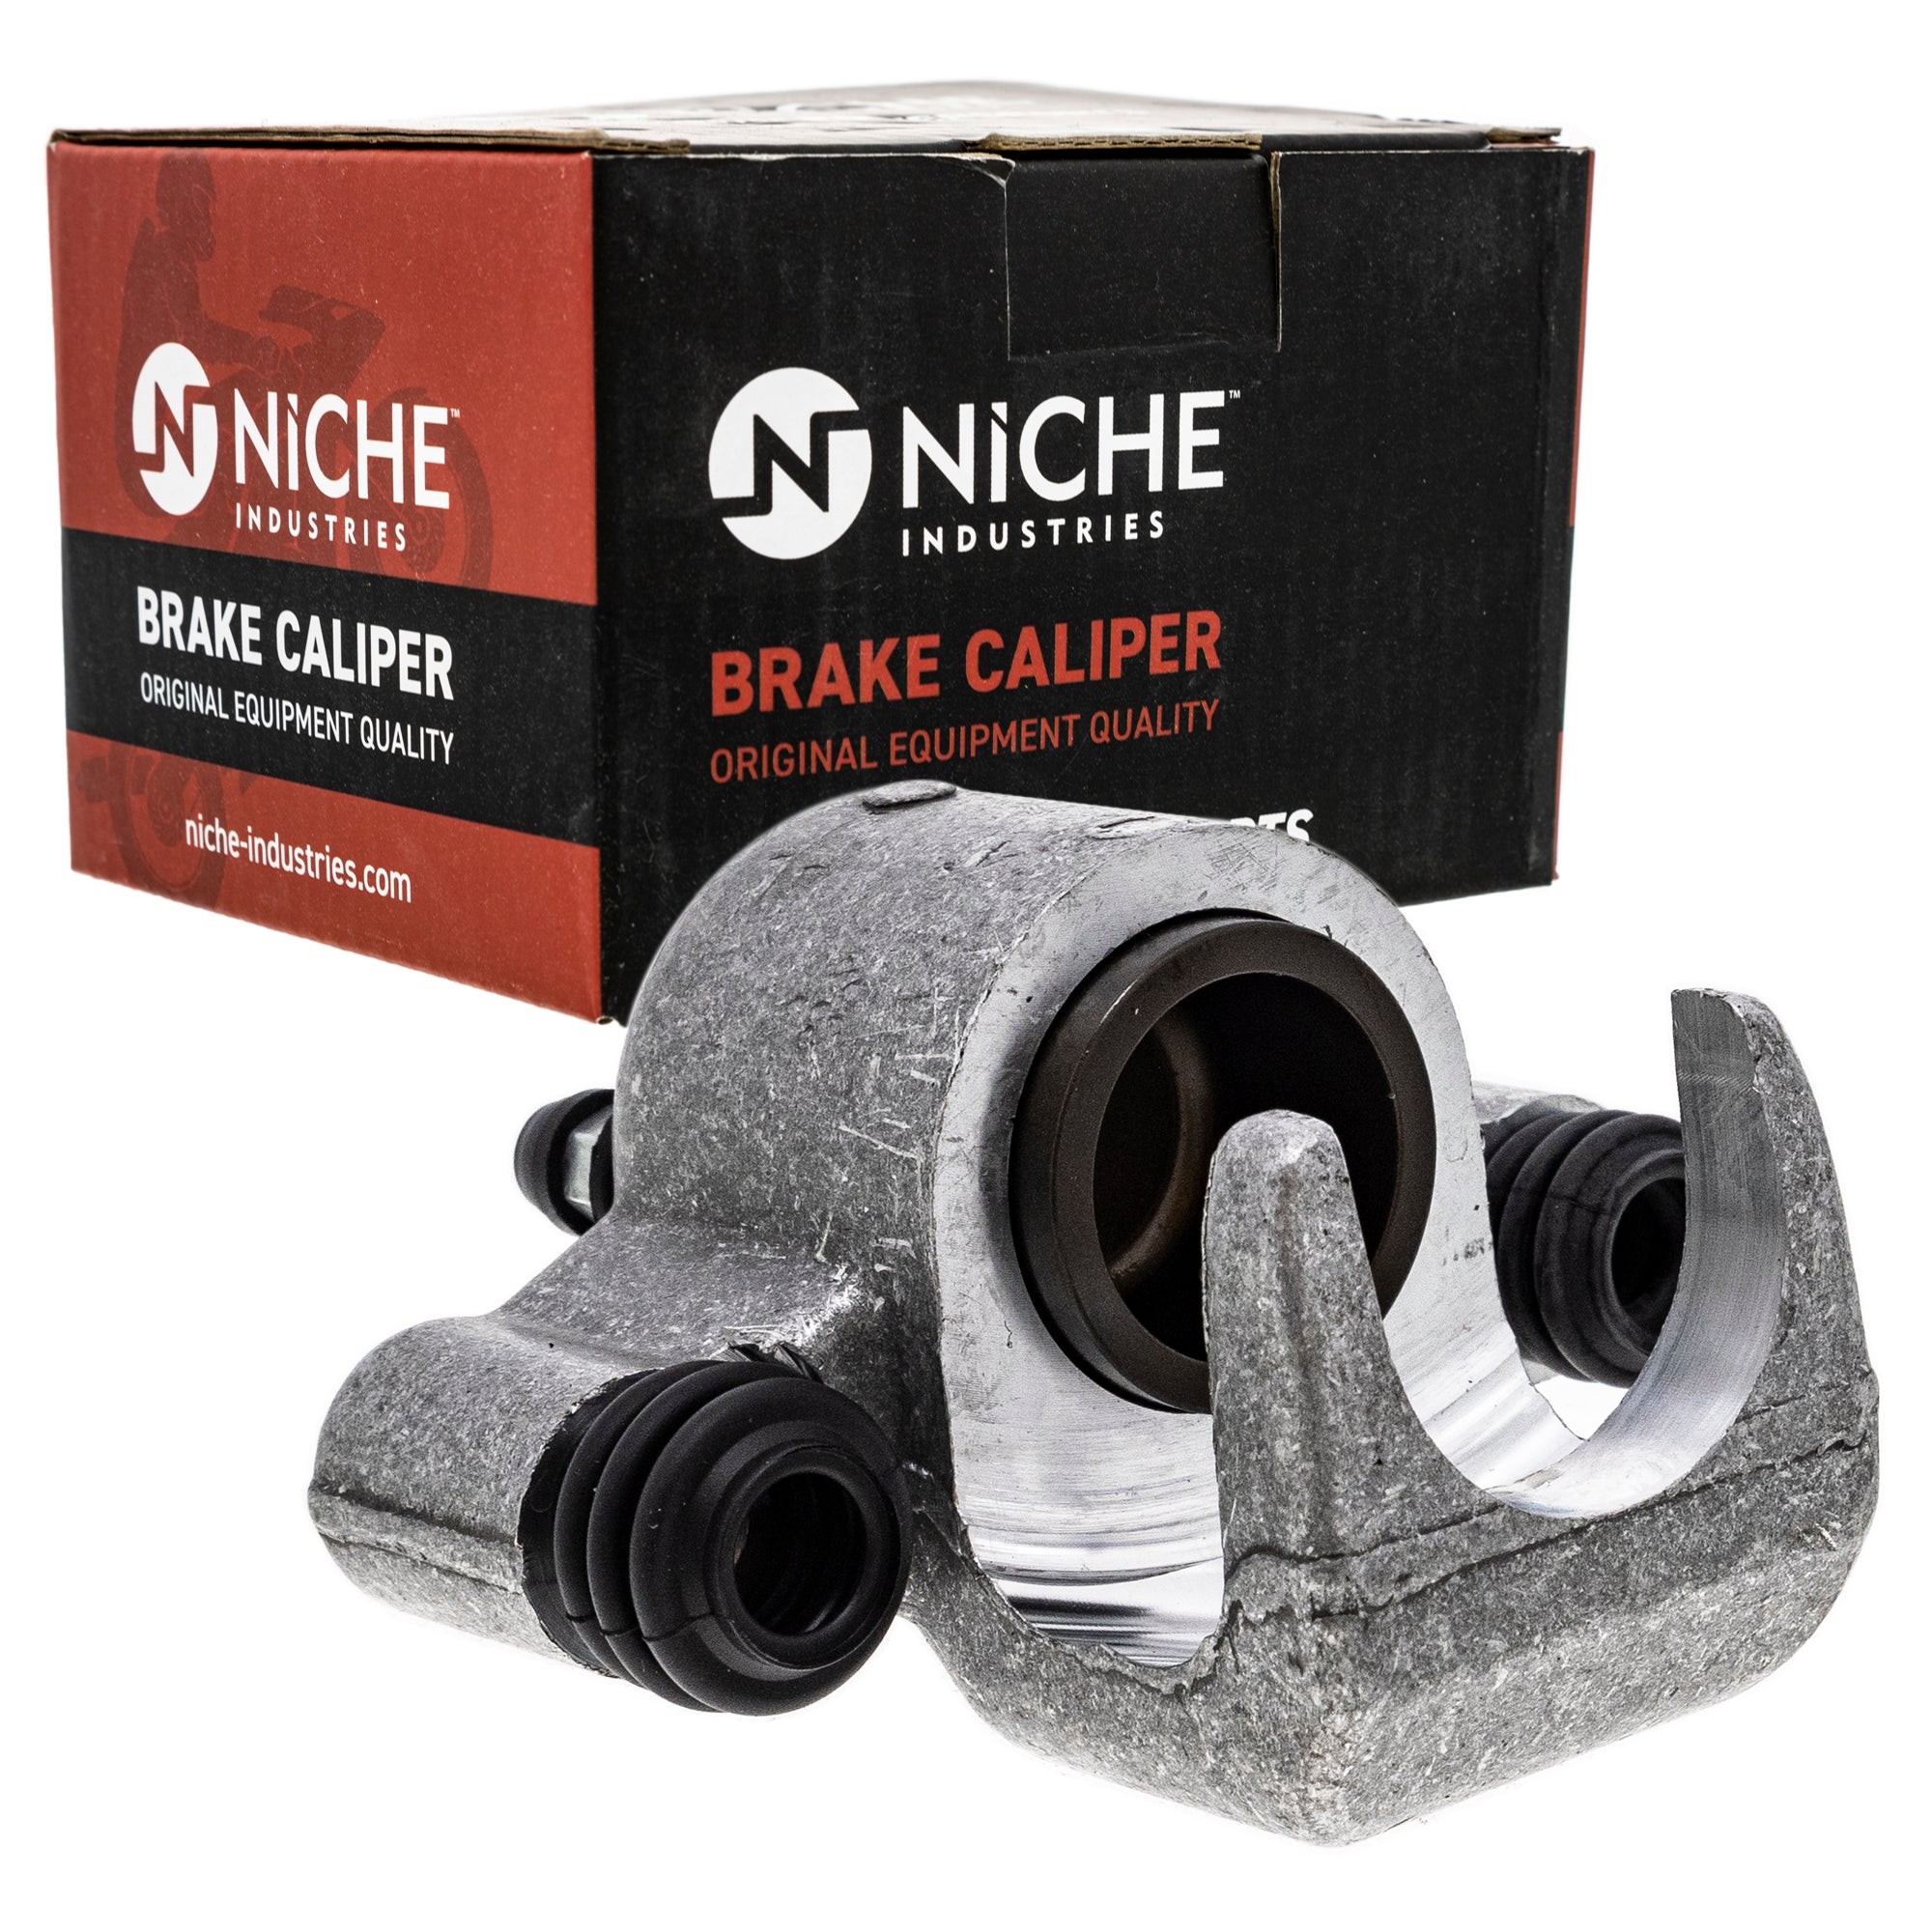 NICHE MK1001248 Brake Caliper Kit